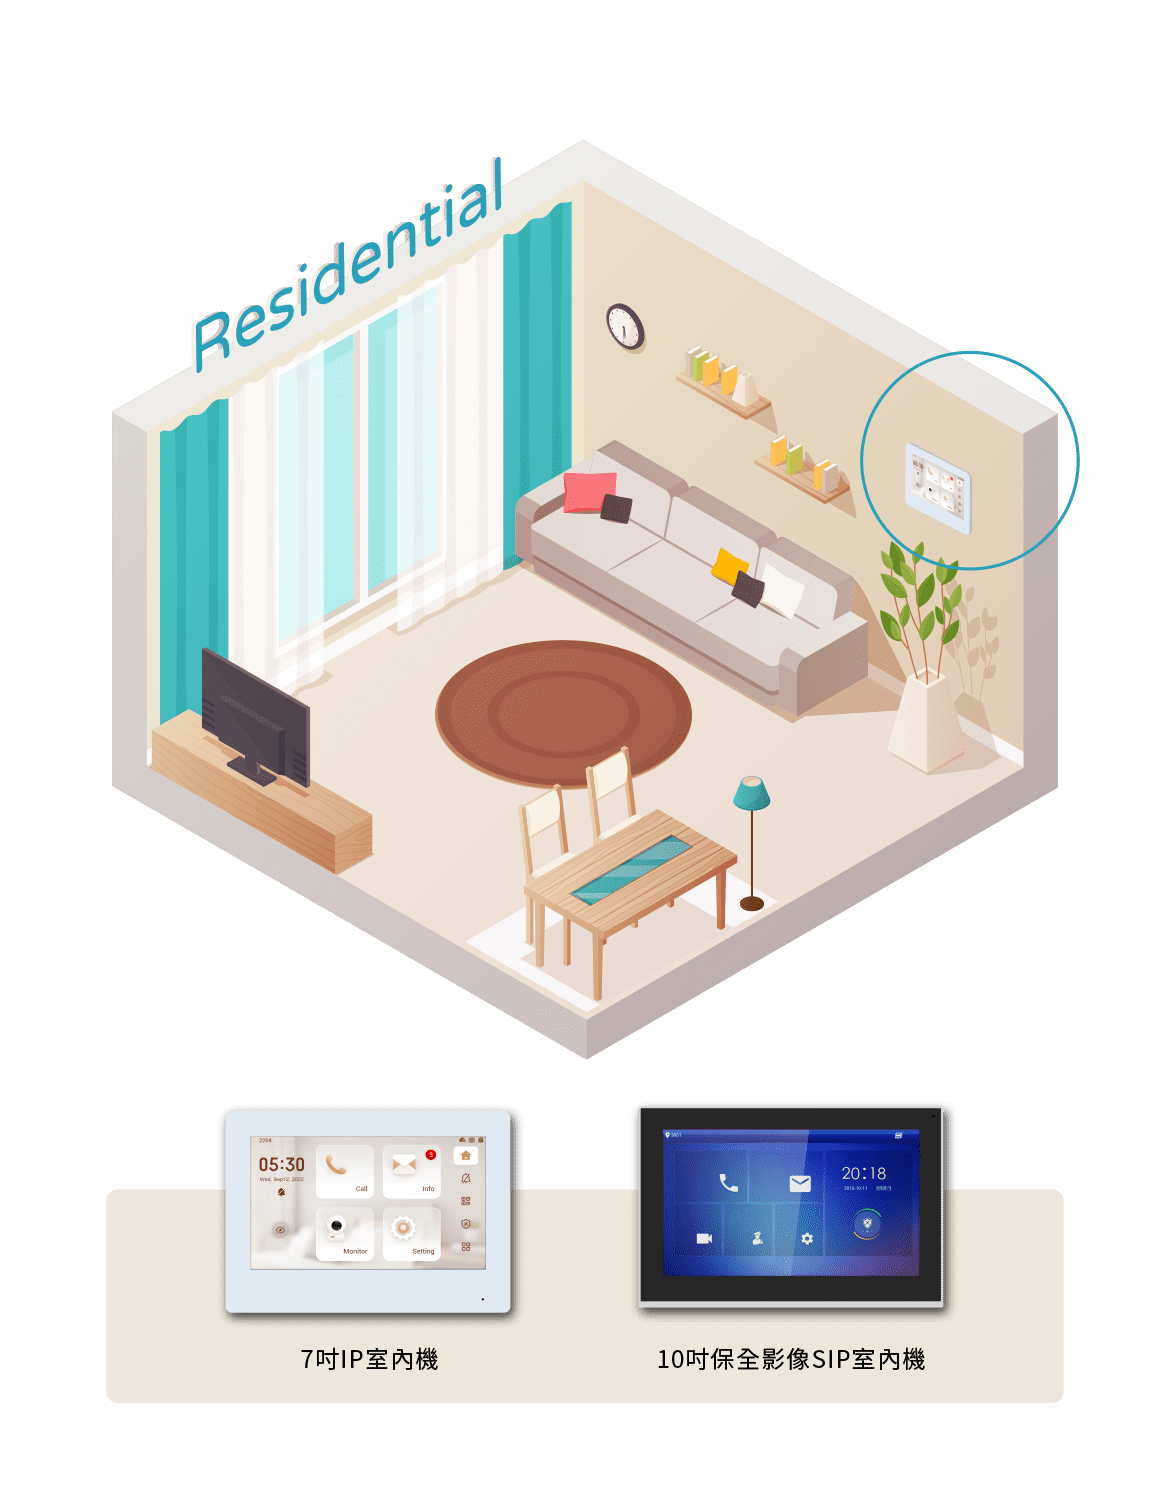 智慧住宅用戶端設備包含7吋IP室內機及10吋保全影像SIP室內機